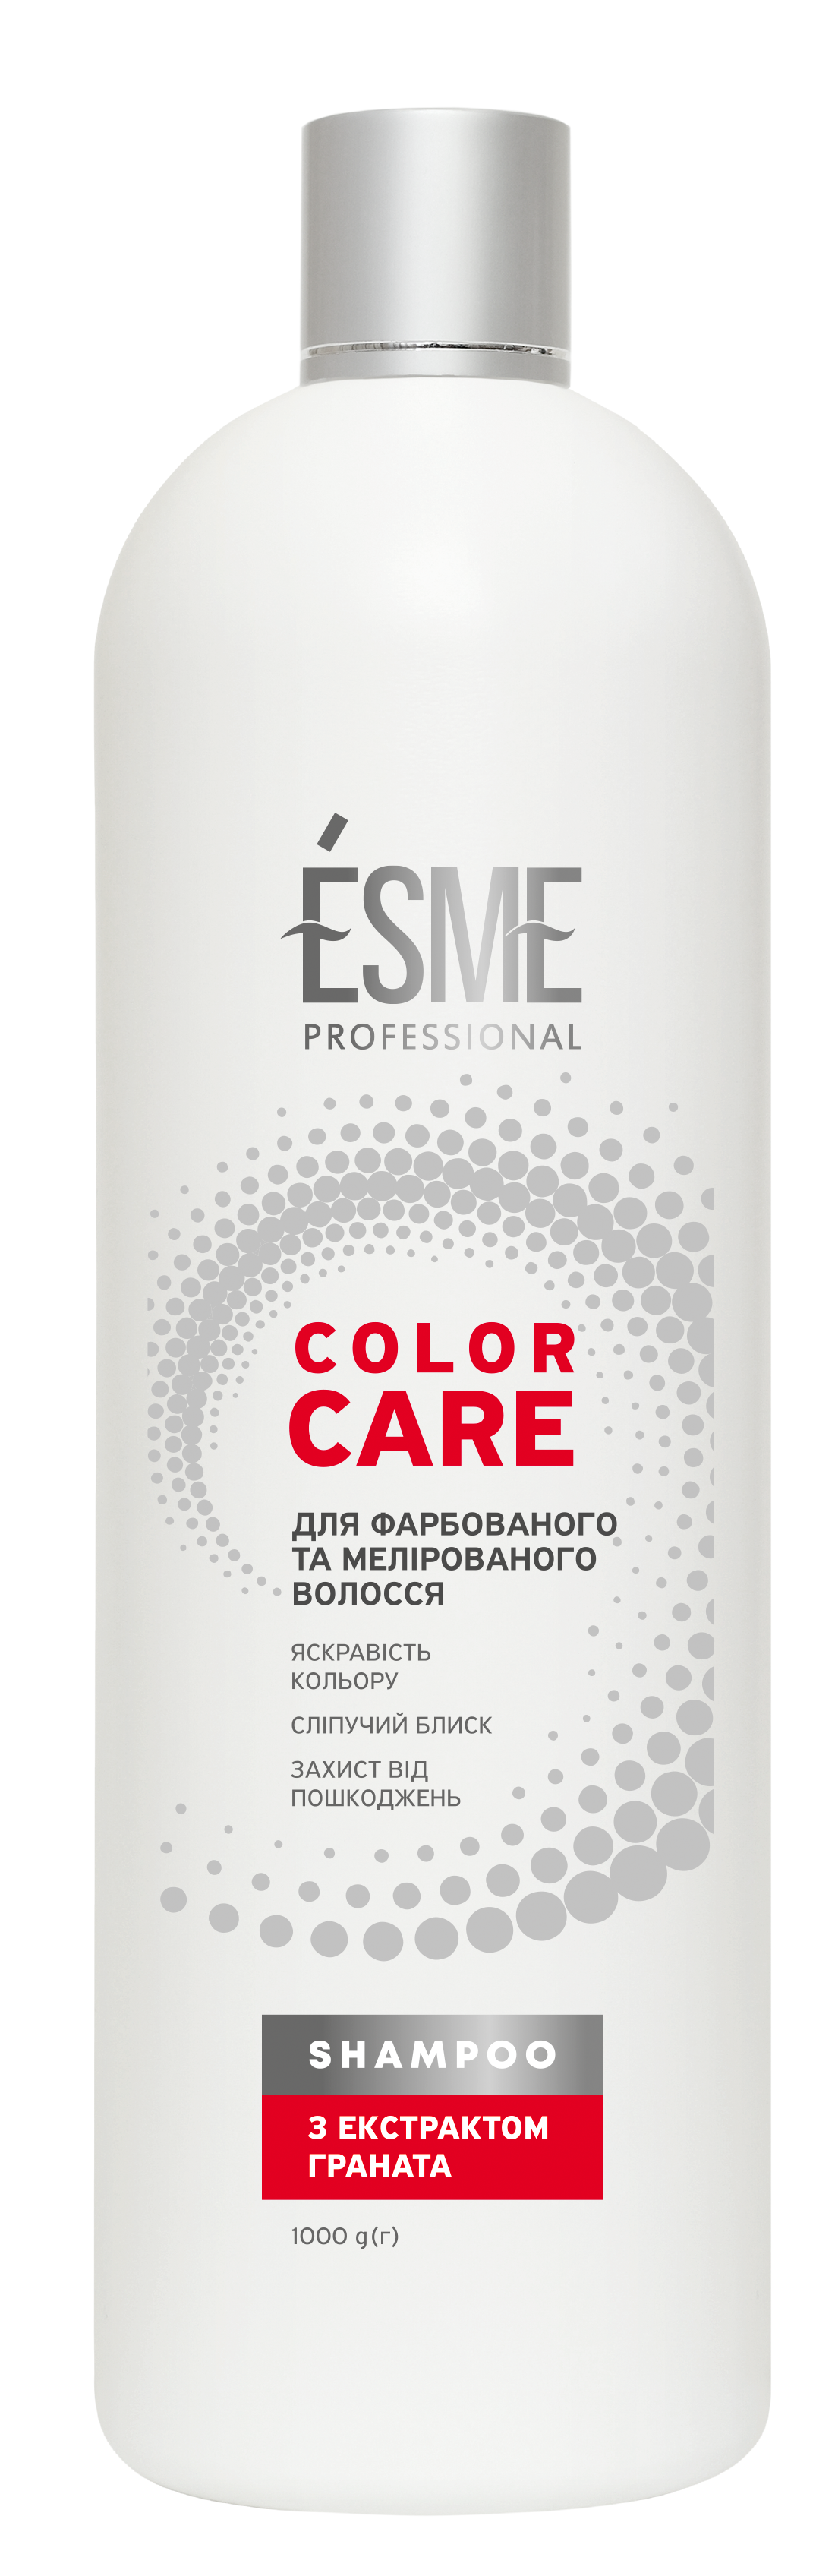 Шампунь Esme Color Care с экстрактом граната, 1 л - фото 1